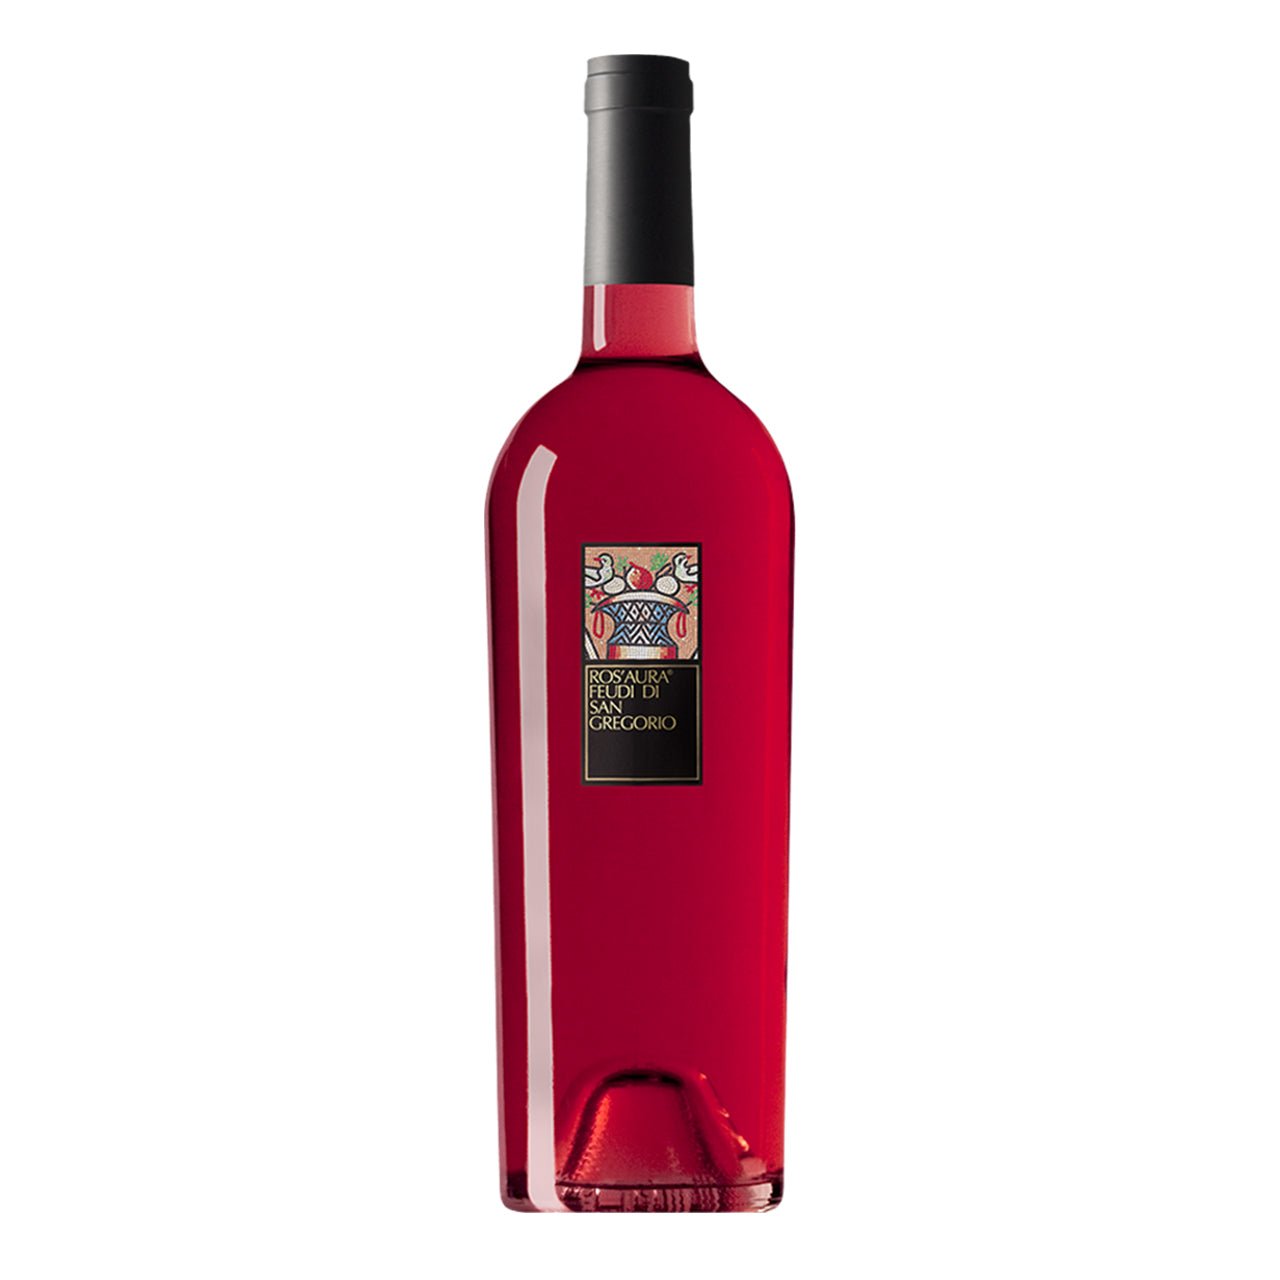 Feudi di San Gregorio Ros'Aura Rosato Irpinia 2021 - Wine Italy Rose - Liquor Wine Cave